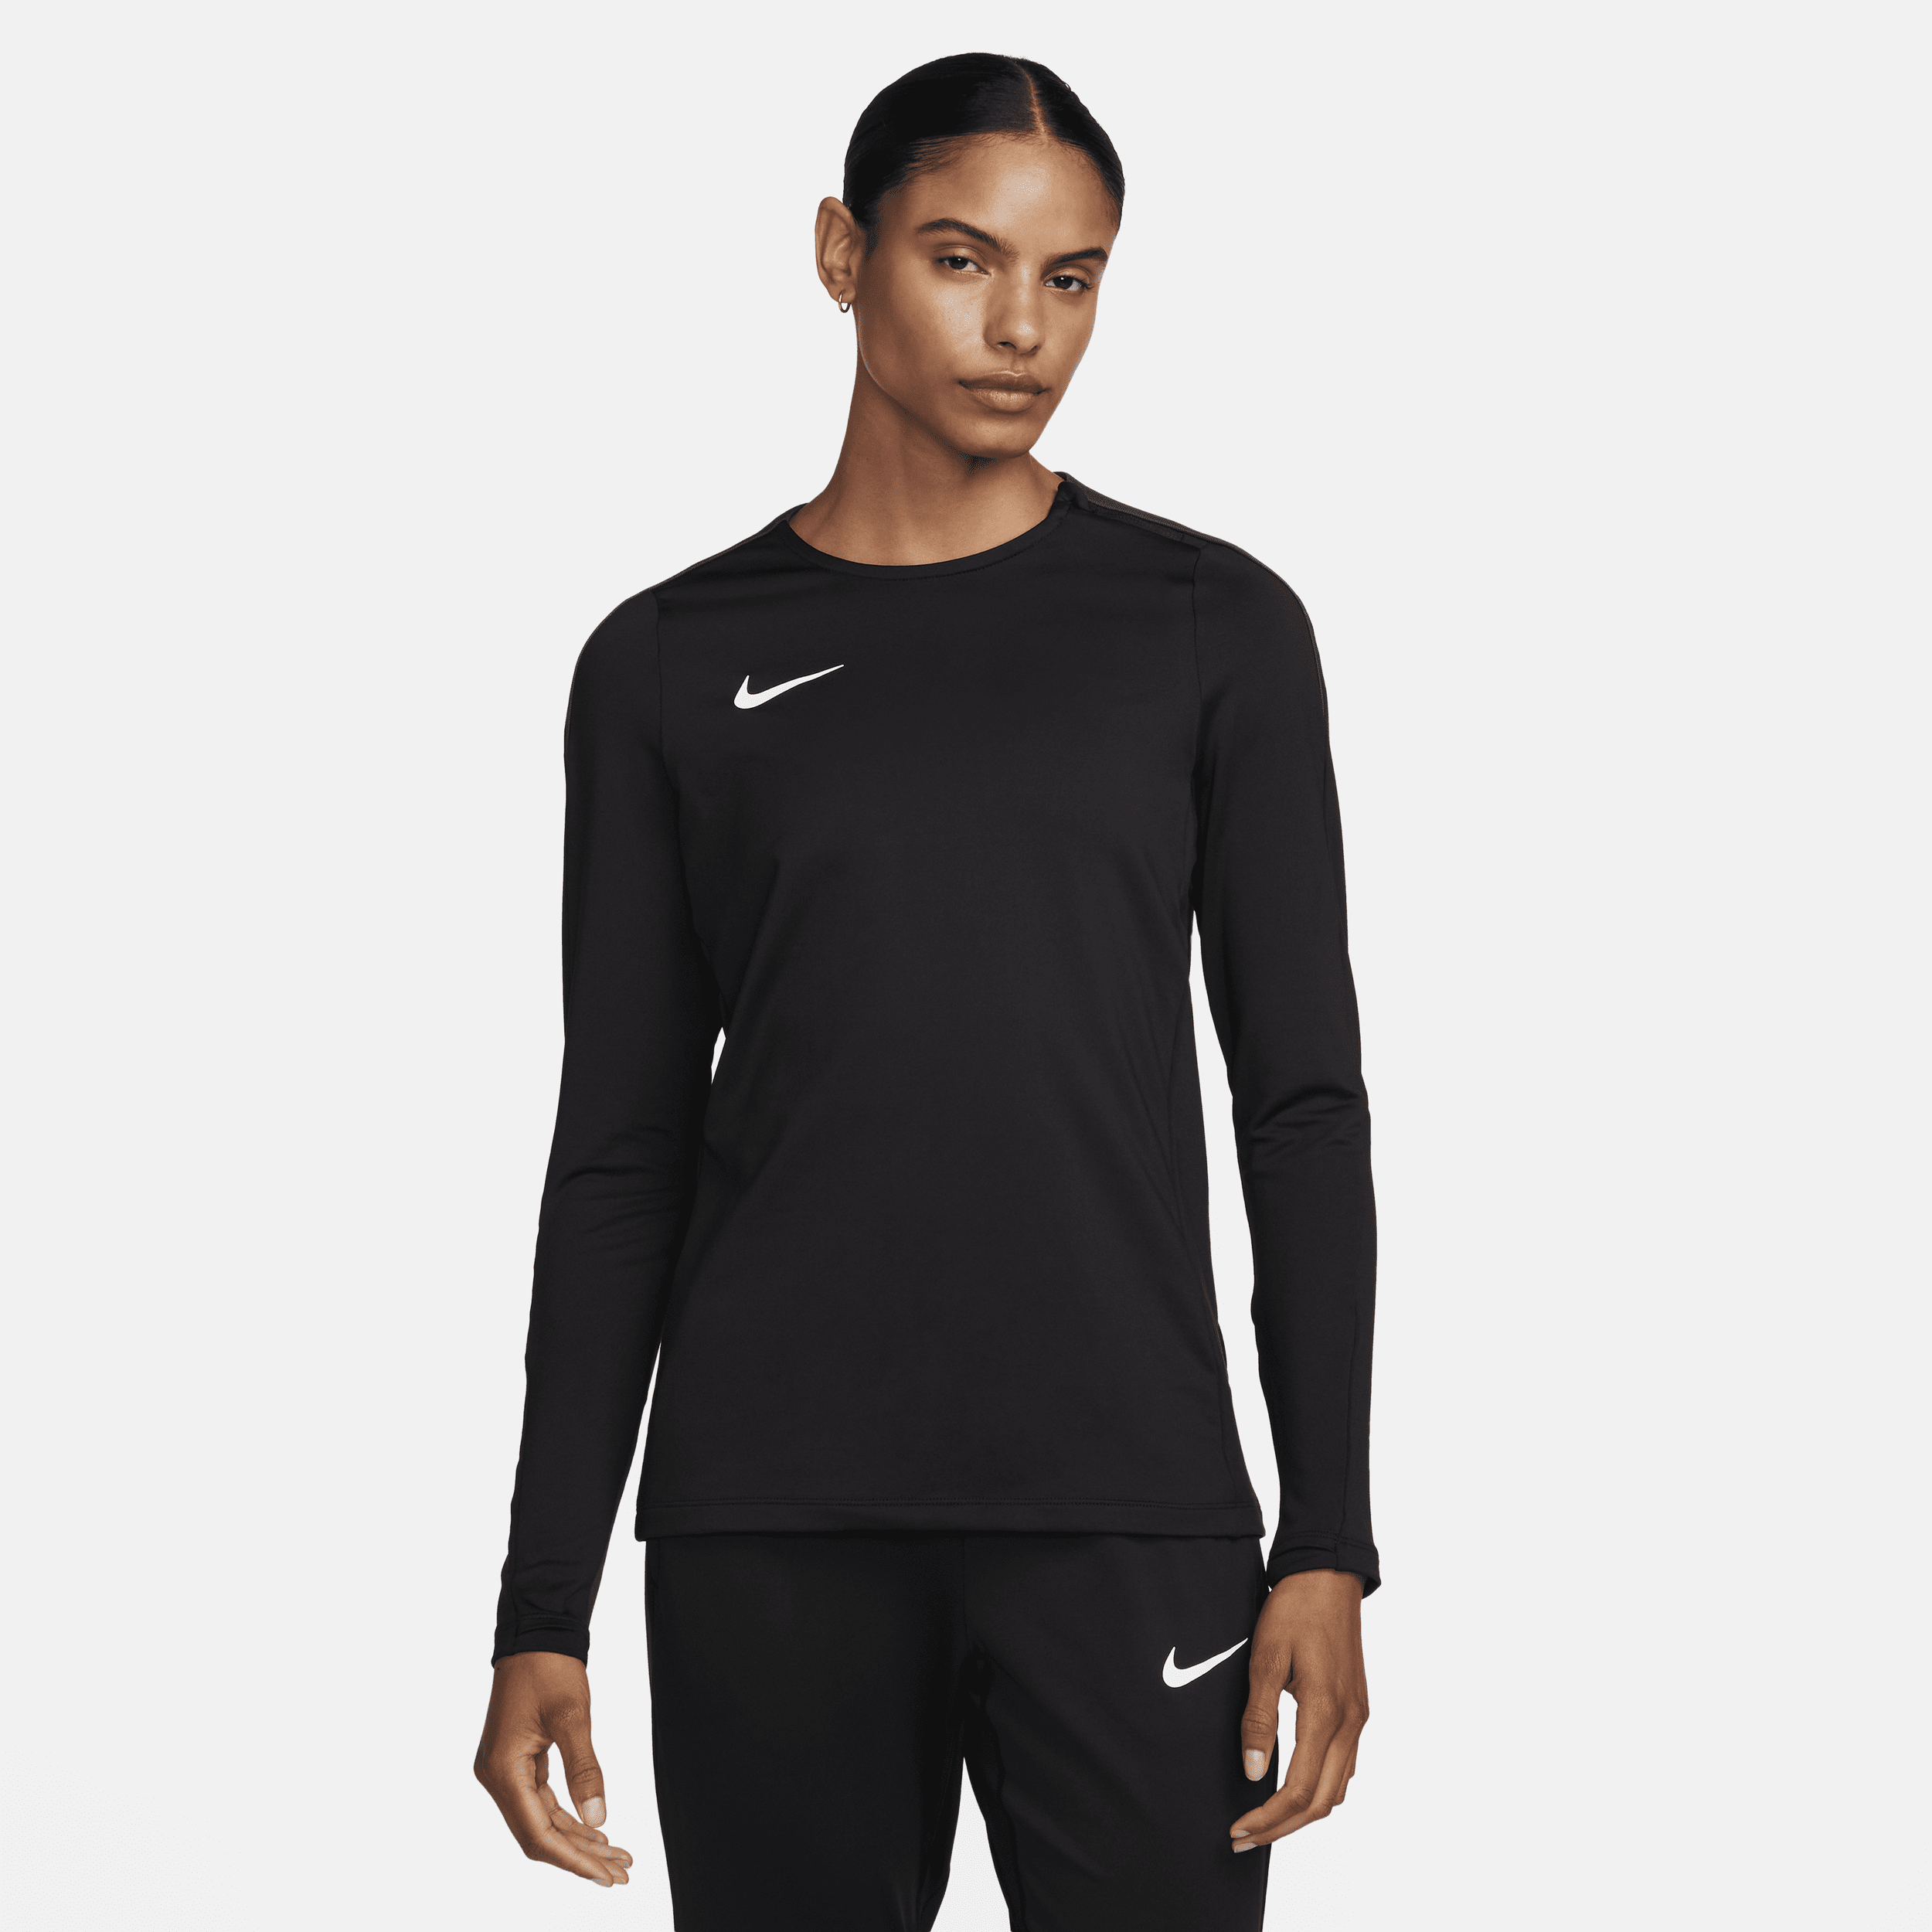 Strike Nike Dri-FIT-fodboldtrøje med rund hals til kvinder - sort